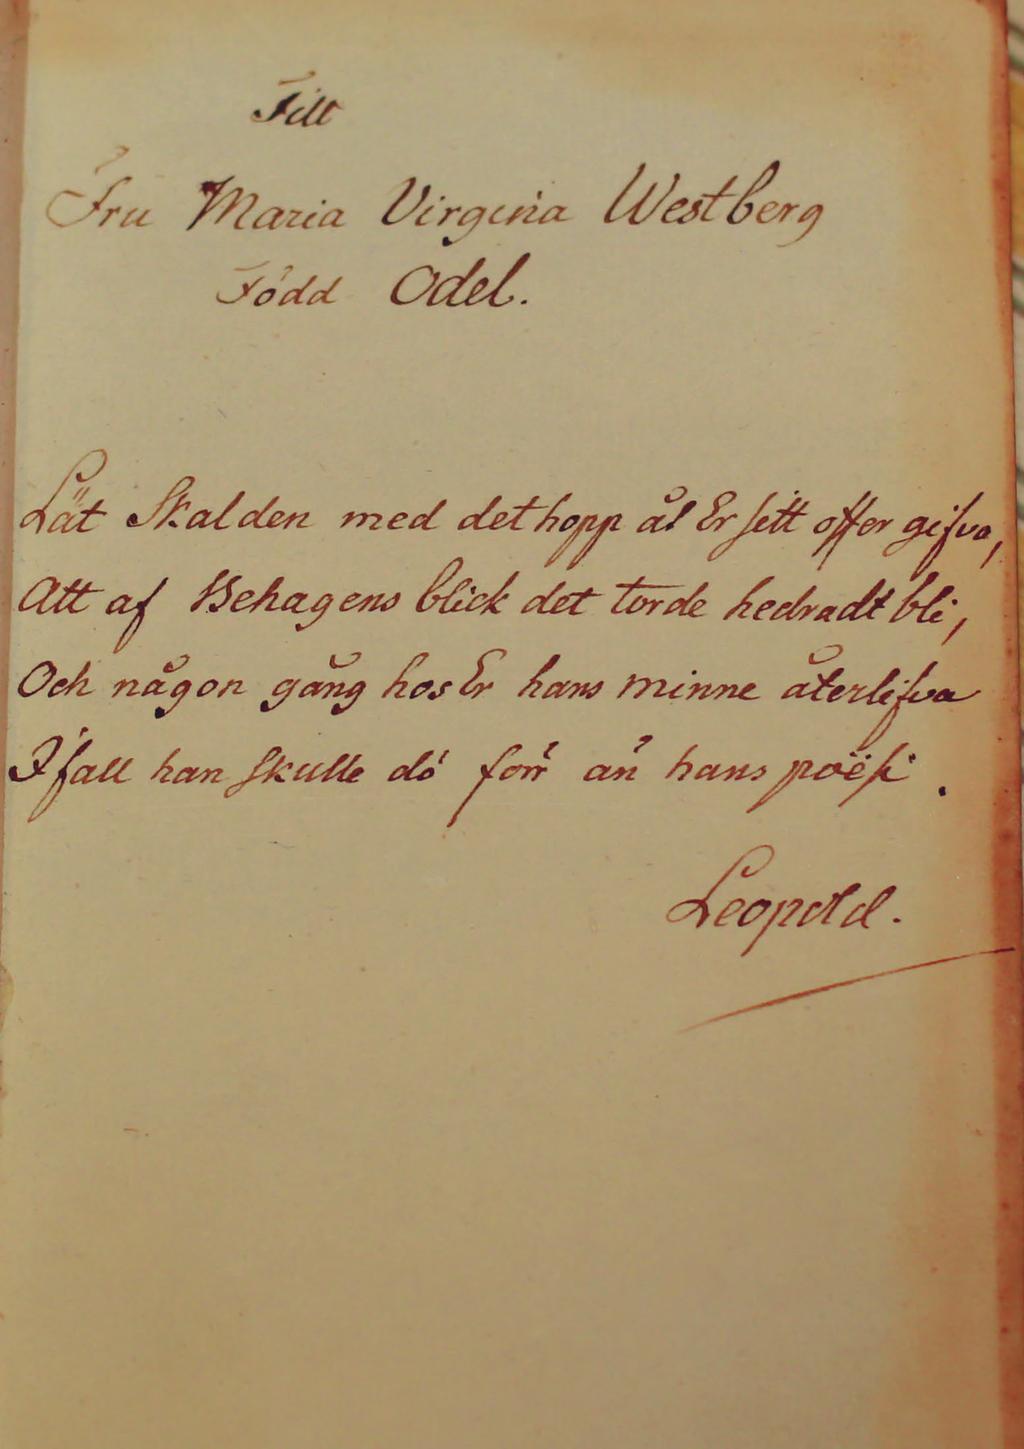 128 Miscellanea Dedikationsdikt av Carl Gustaf af Leopold (1756 1829) till Maria Virginia Westberg, född Odel (1759 1803), egenhändigt